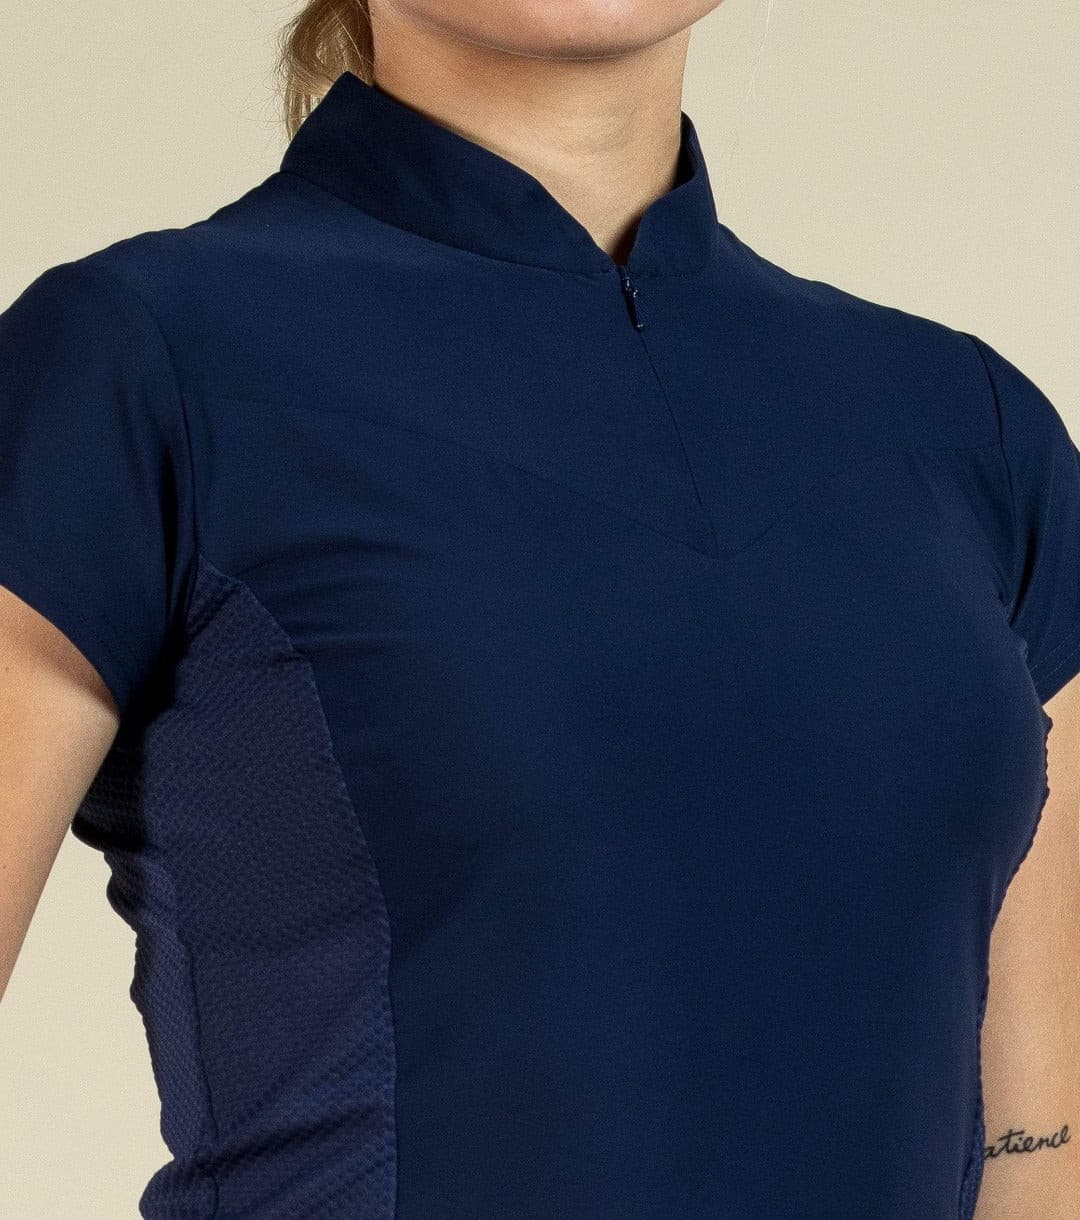 Women's golf shirt navy blue